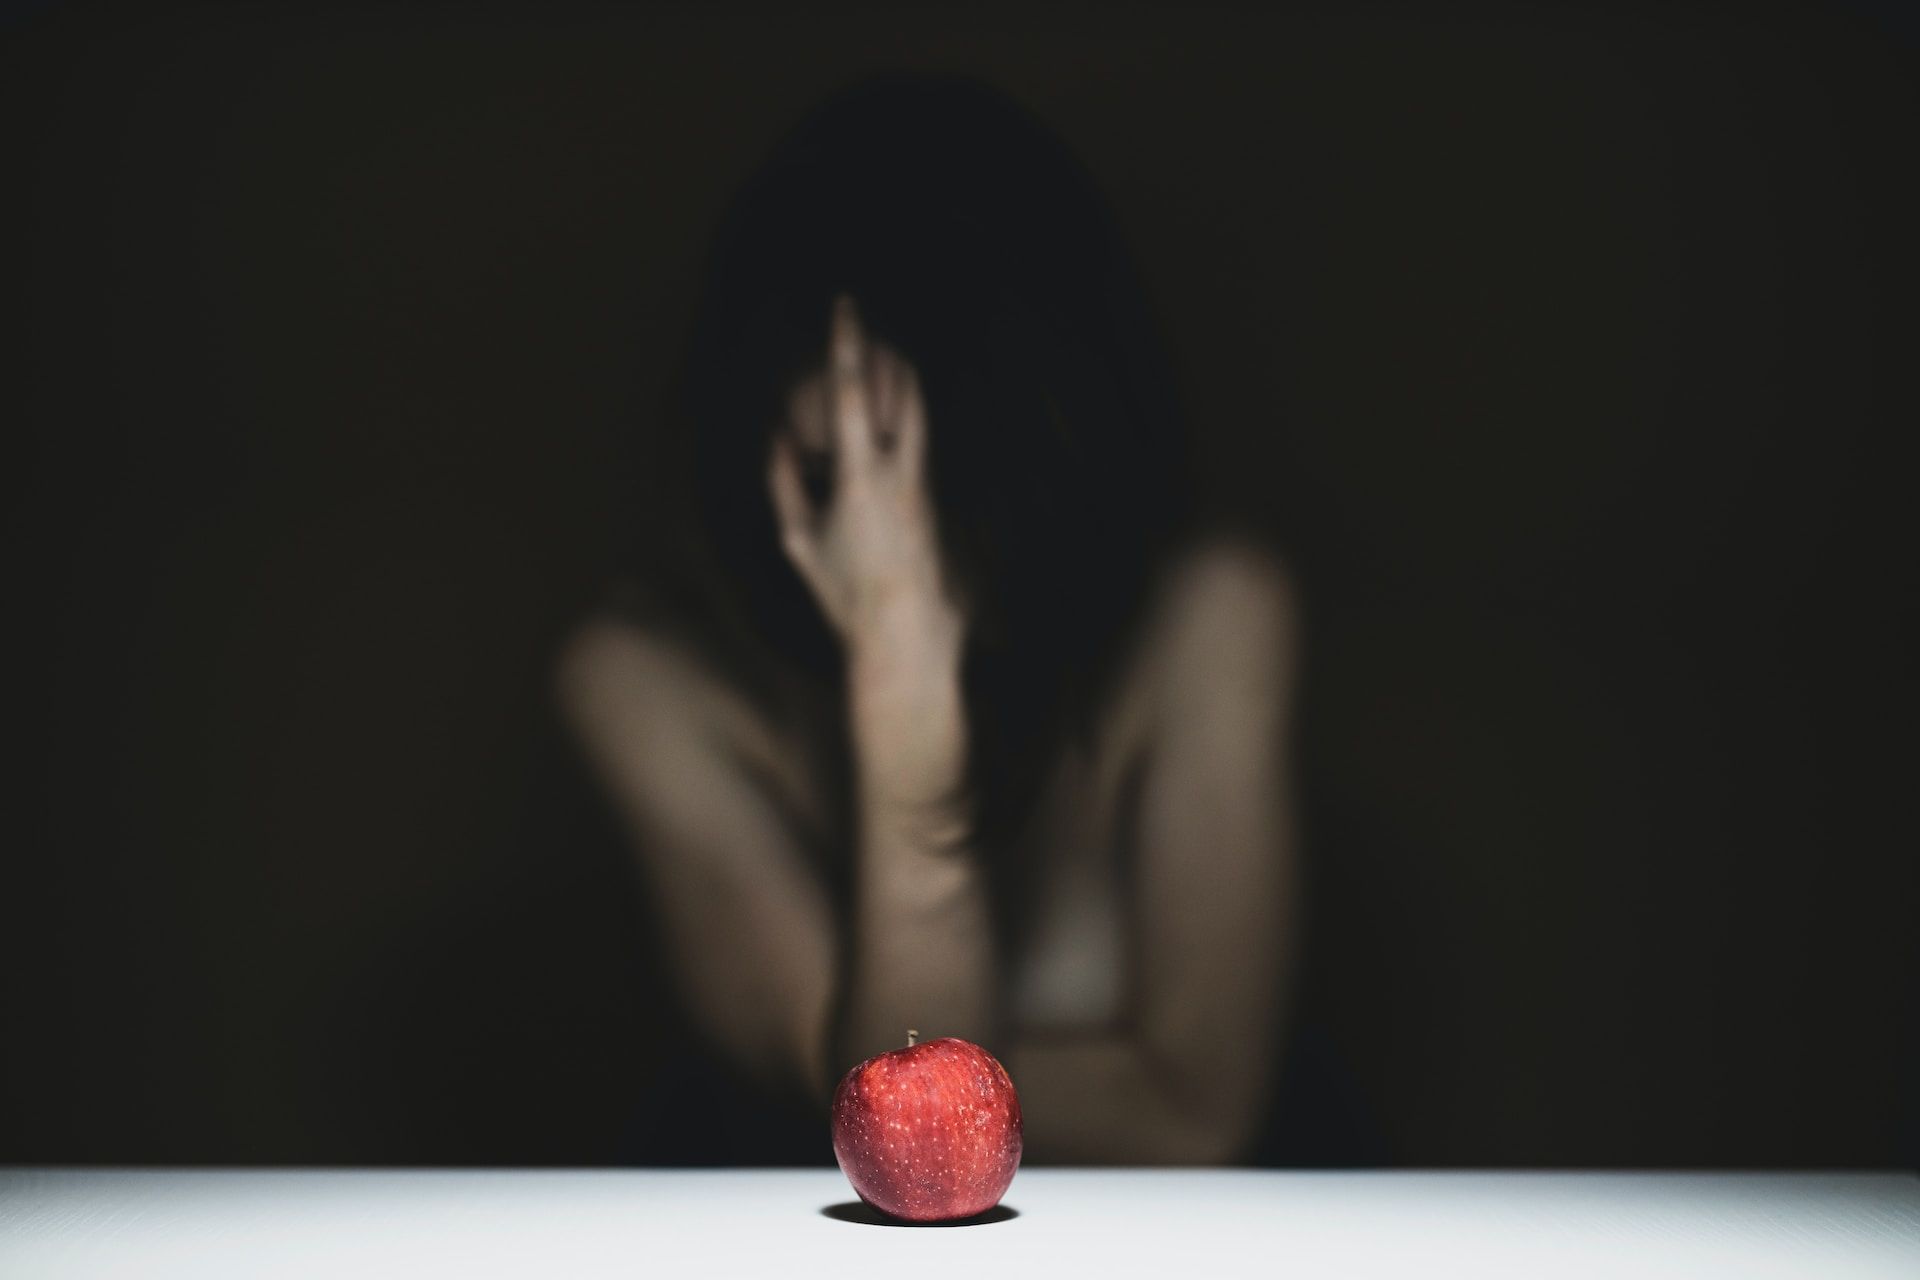 Gros plan sur une pomme avec une femme nue derrière se prenant la tête - Photo by engin akyurt on https://unsplash.com/fr/photos/femme-se-couvrant-le-visage-avec-de-la-pomme-rouge-ZeuDhLpjgsA